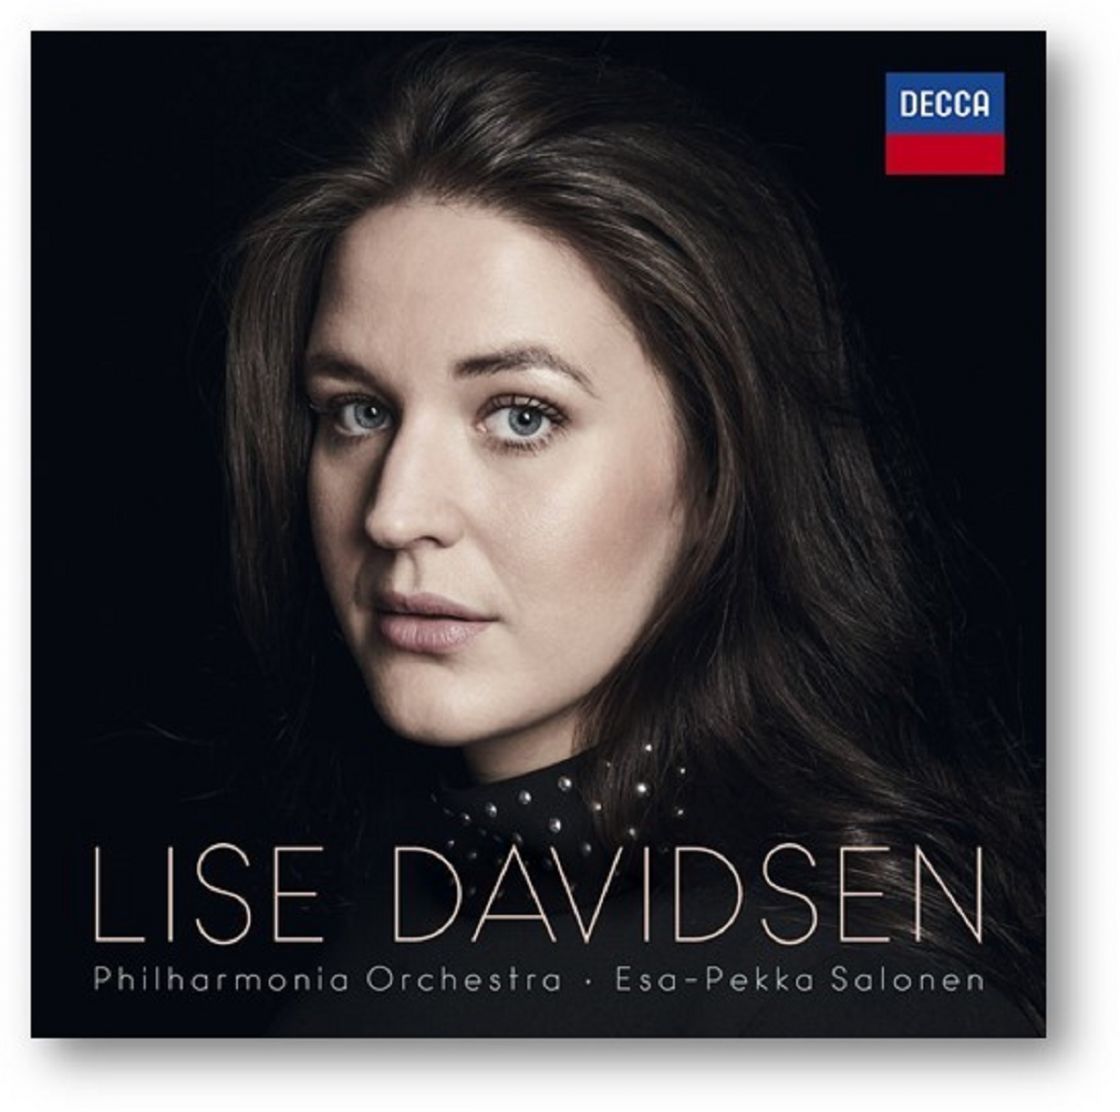 Lise Davidsen - Philharmonia Orchestra - Essa-Pekka Salonen